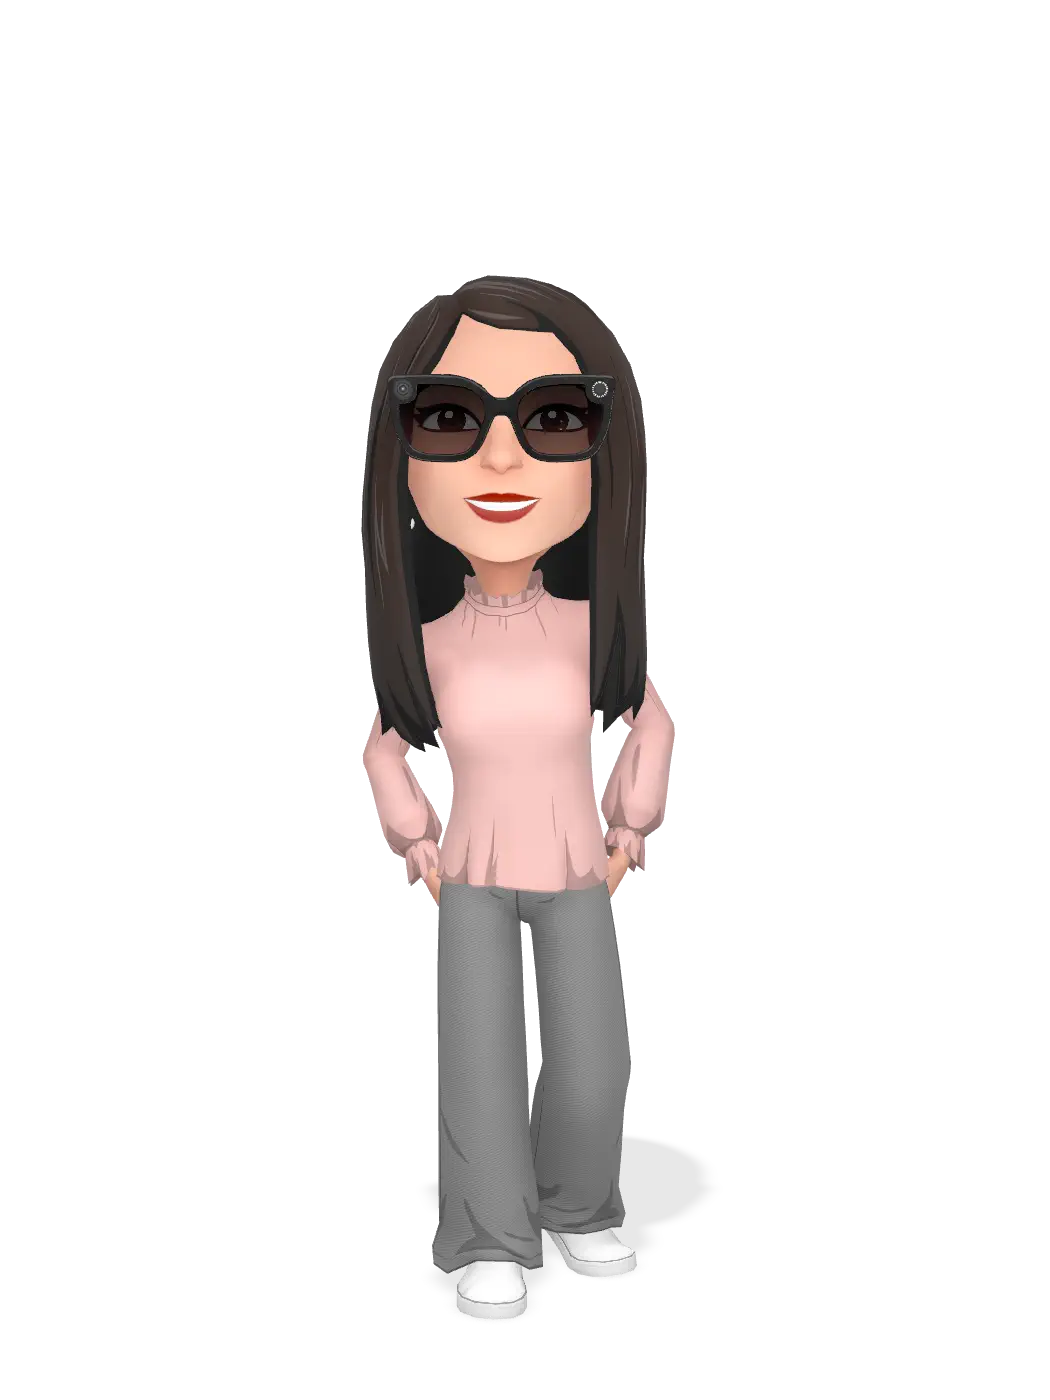 3D Bitmoji for rahooma00000 avatar